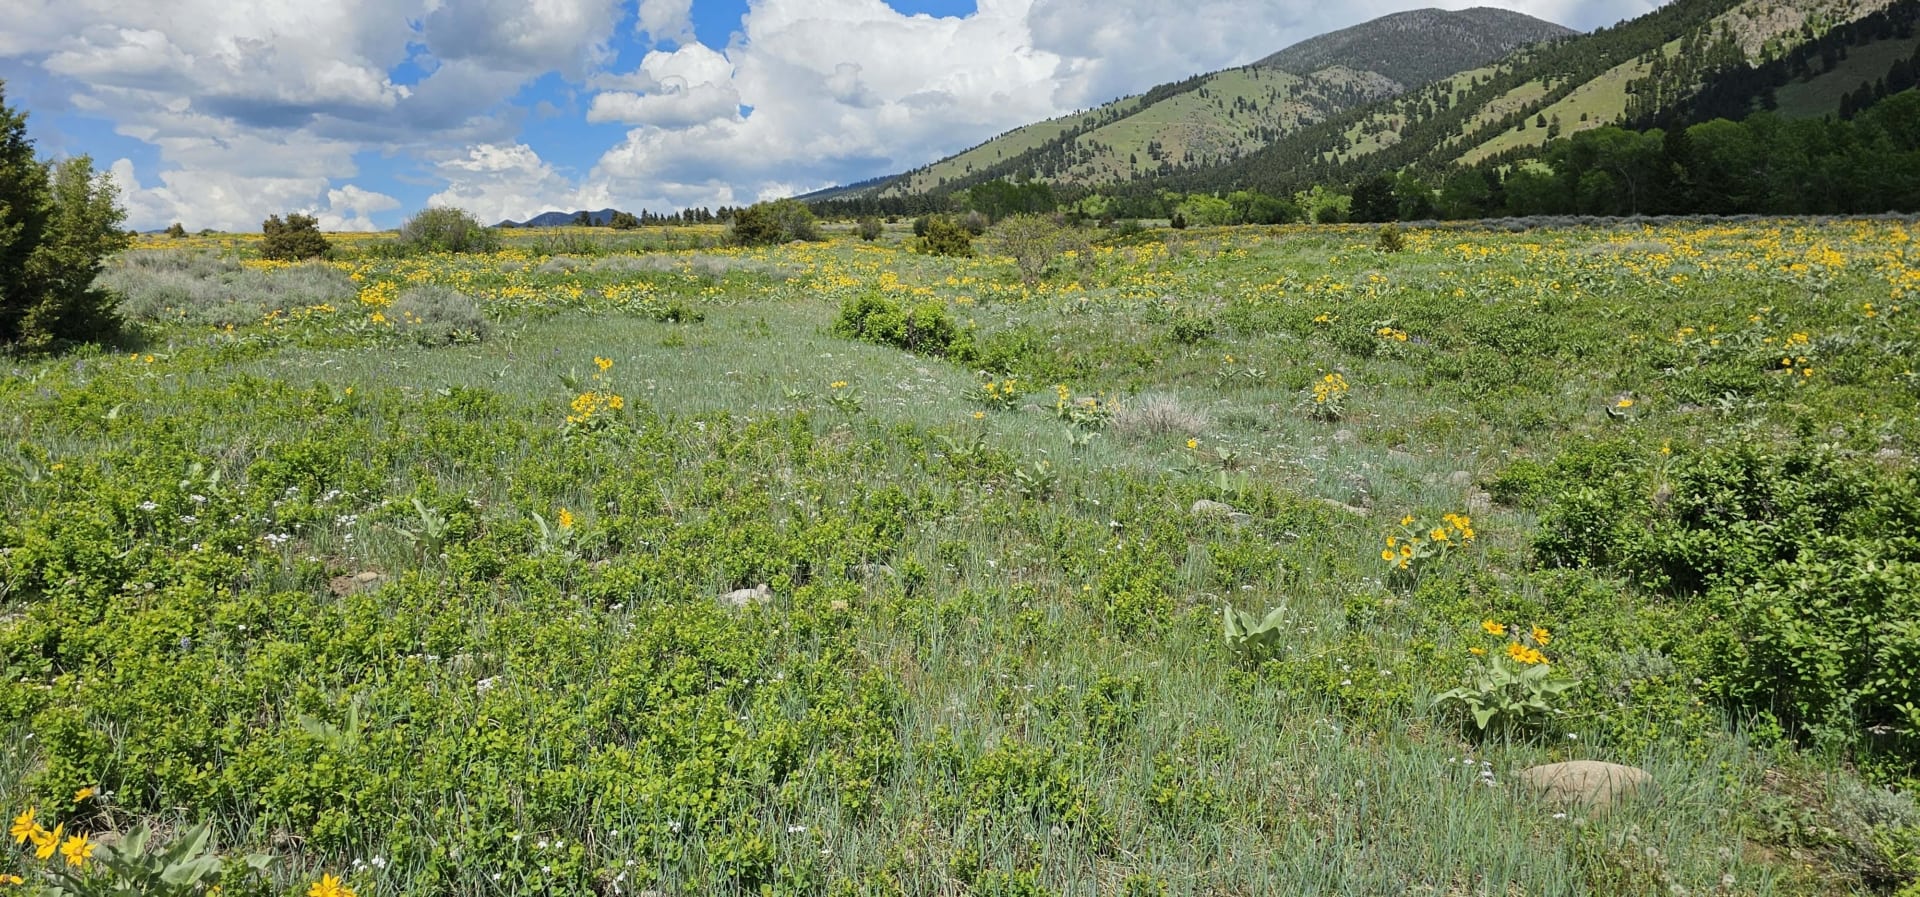 vegetation montana gallatin valley overlook